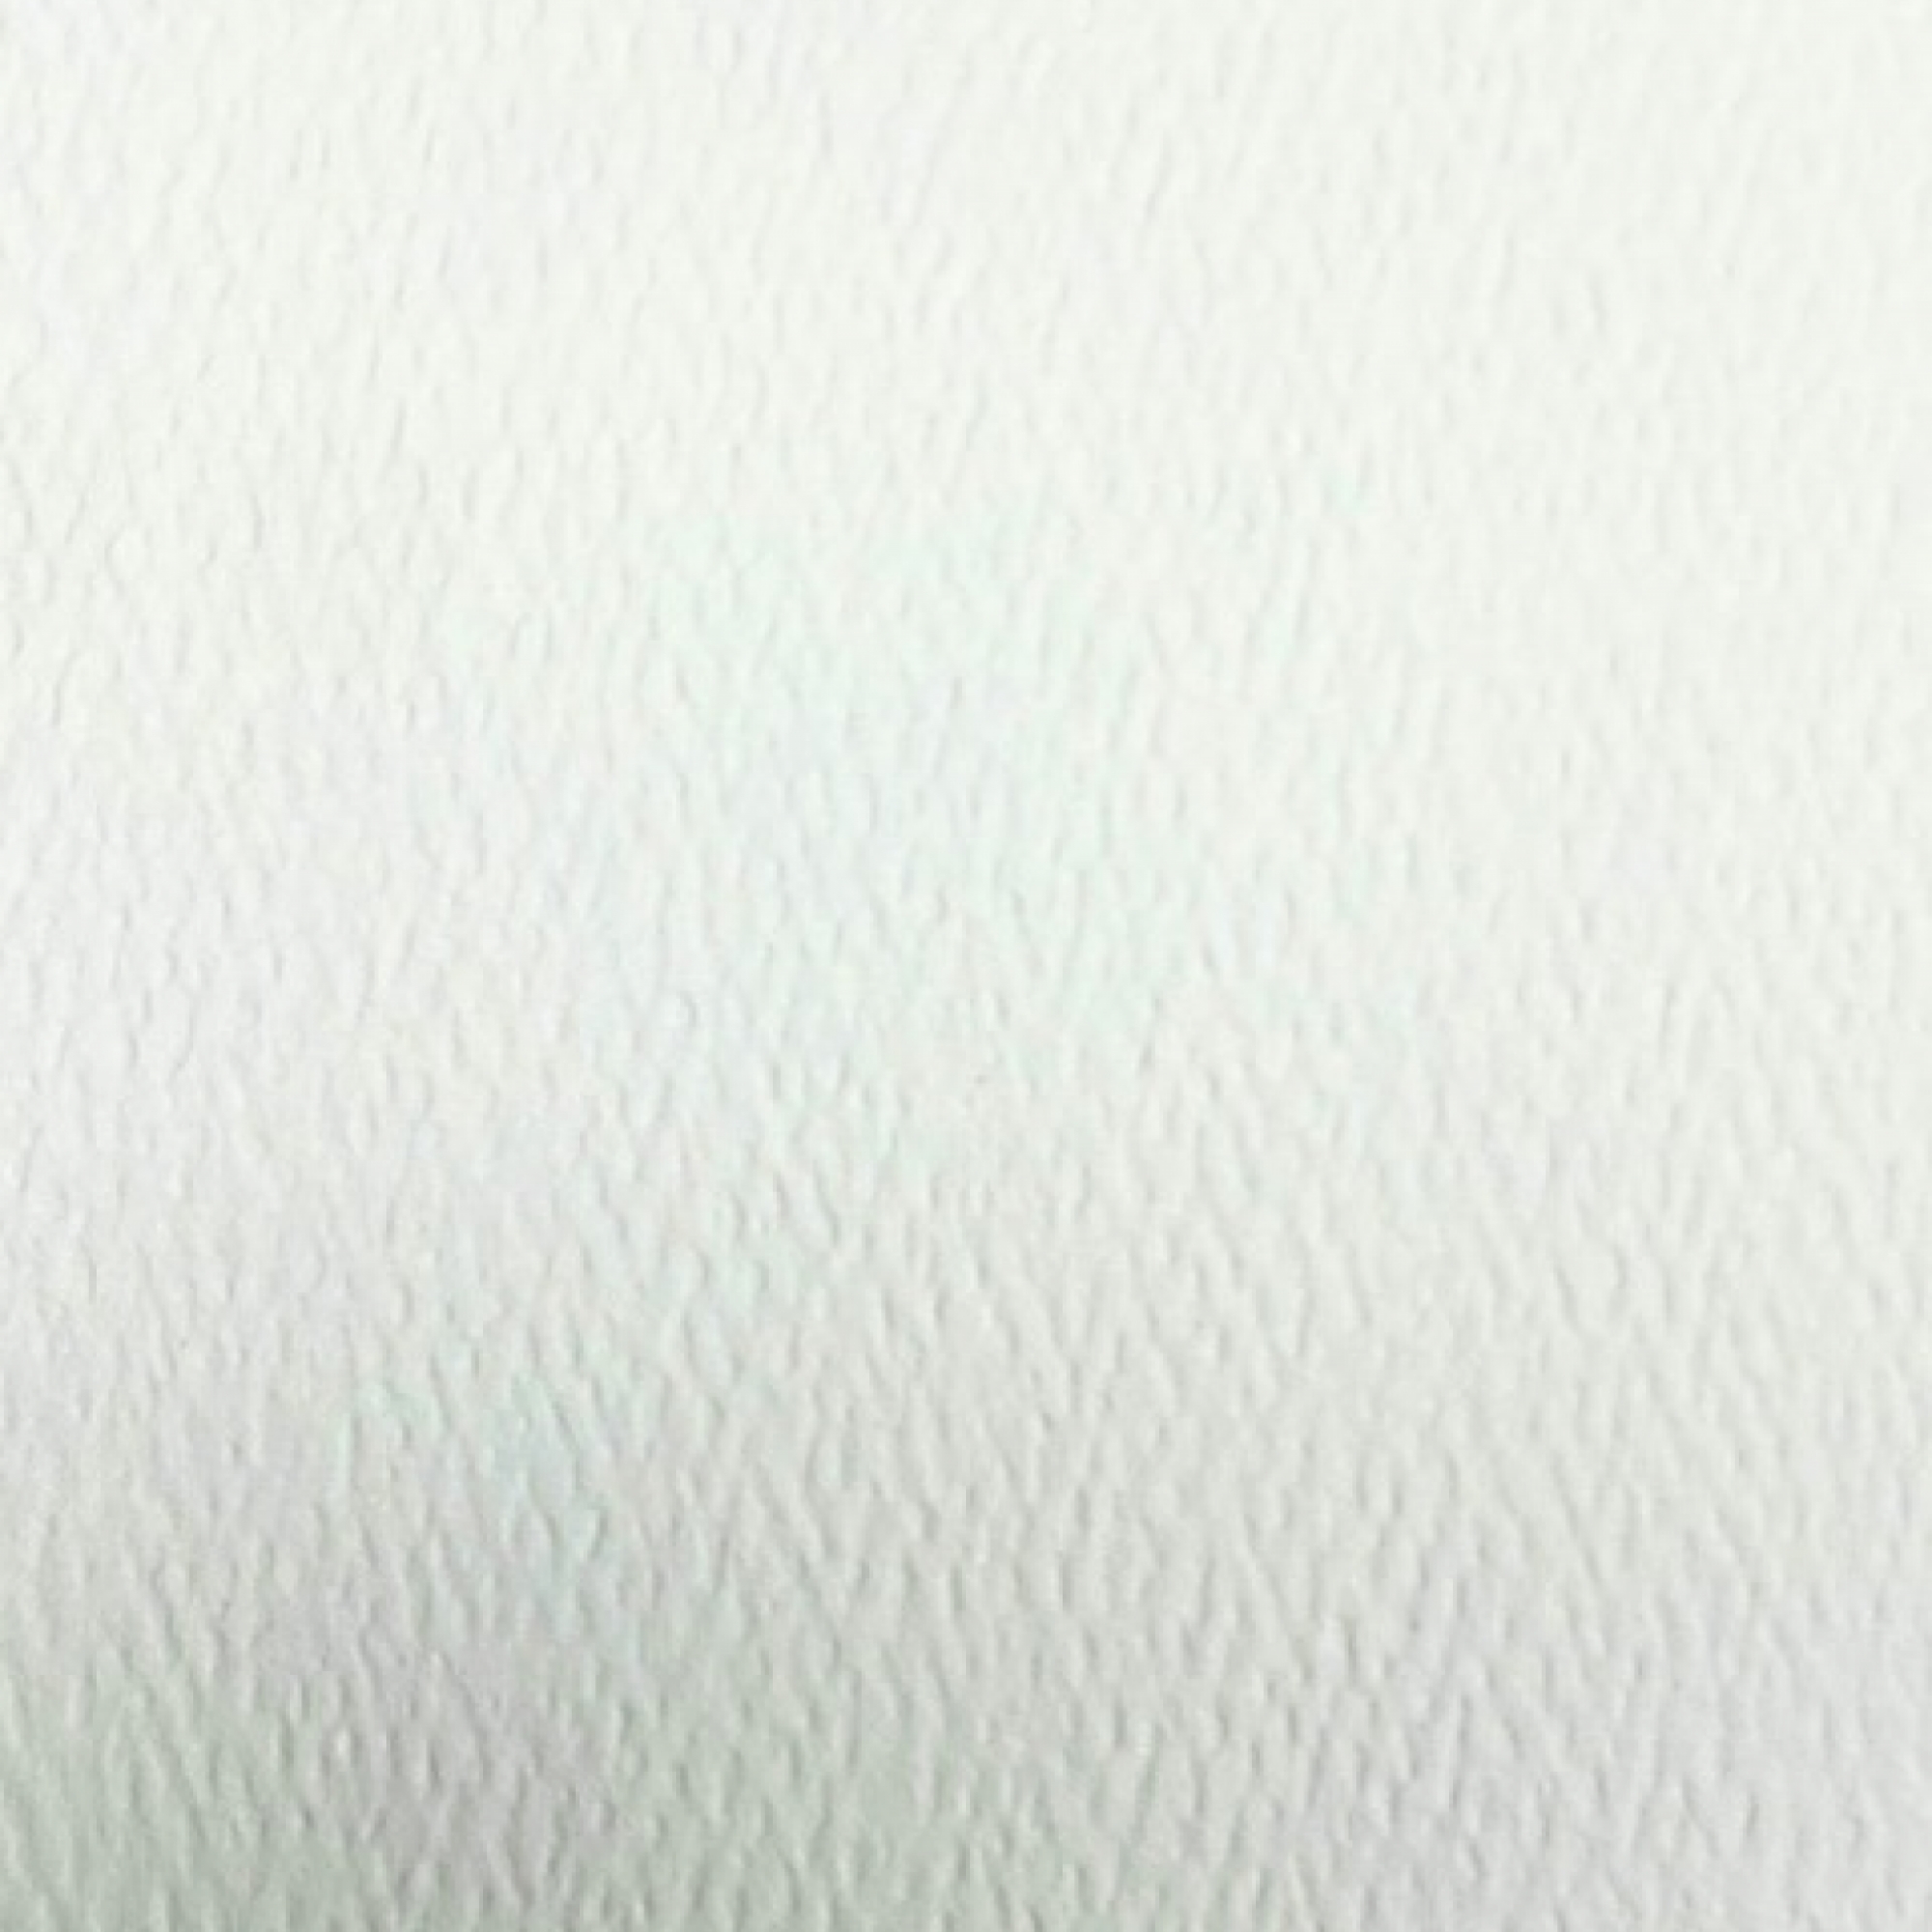 Loop Linen 8.5 x 11 80 Textures Linen Cardstock 250 Sheets/Pkg